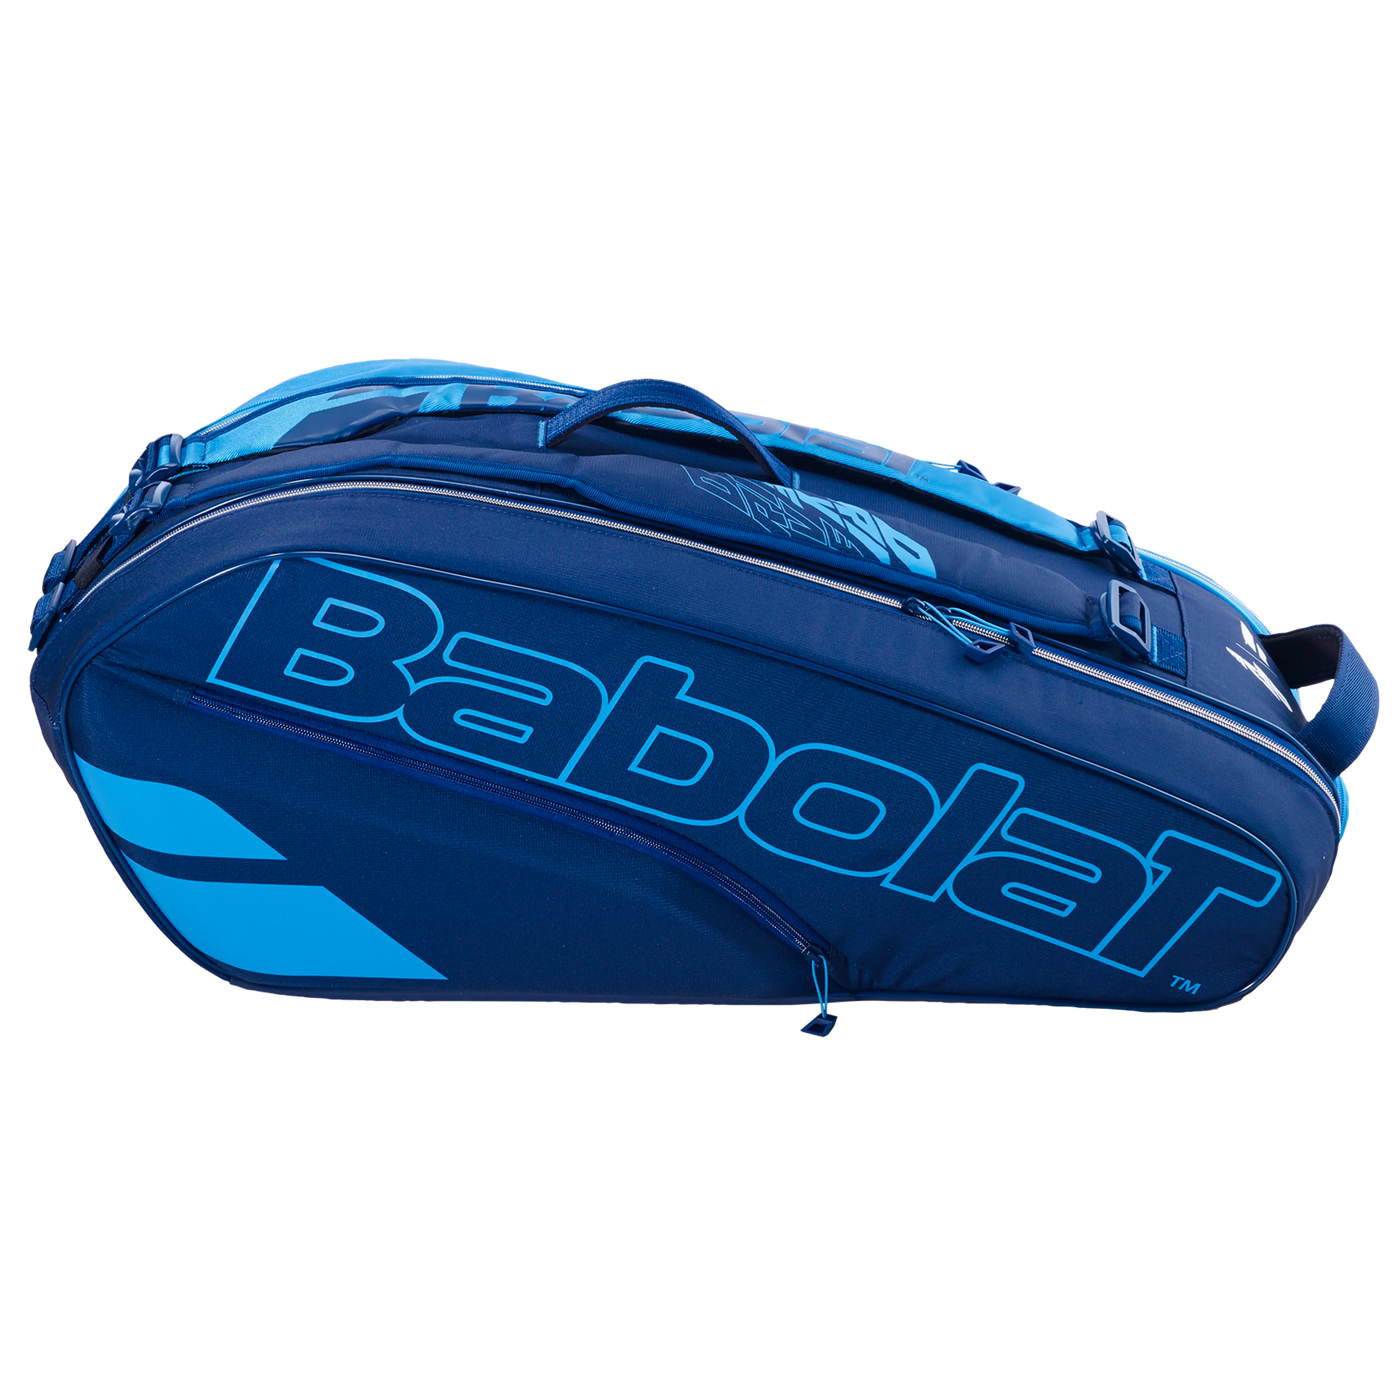 Babolat RH6 Pure Drive